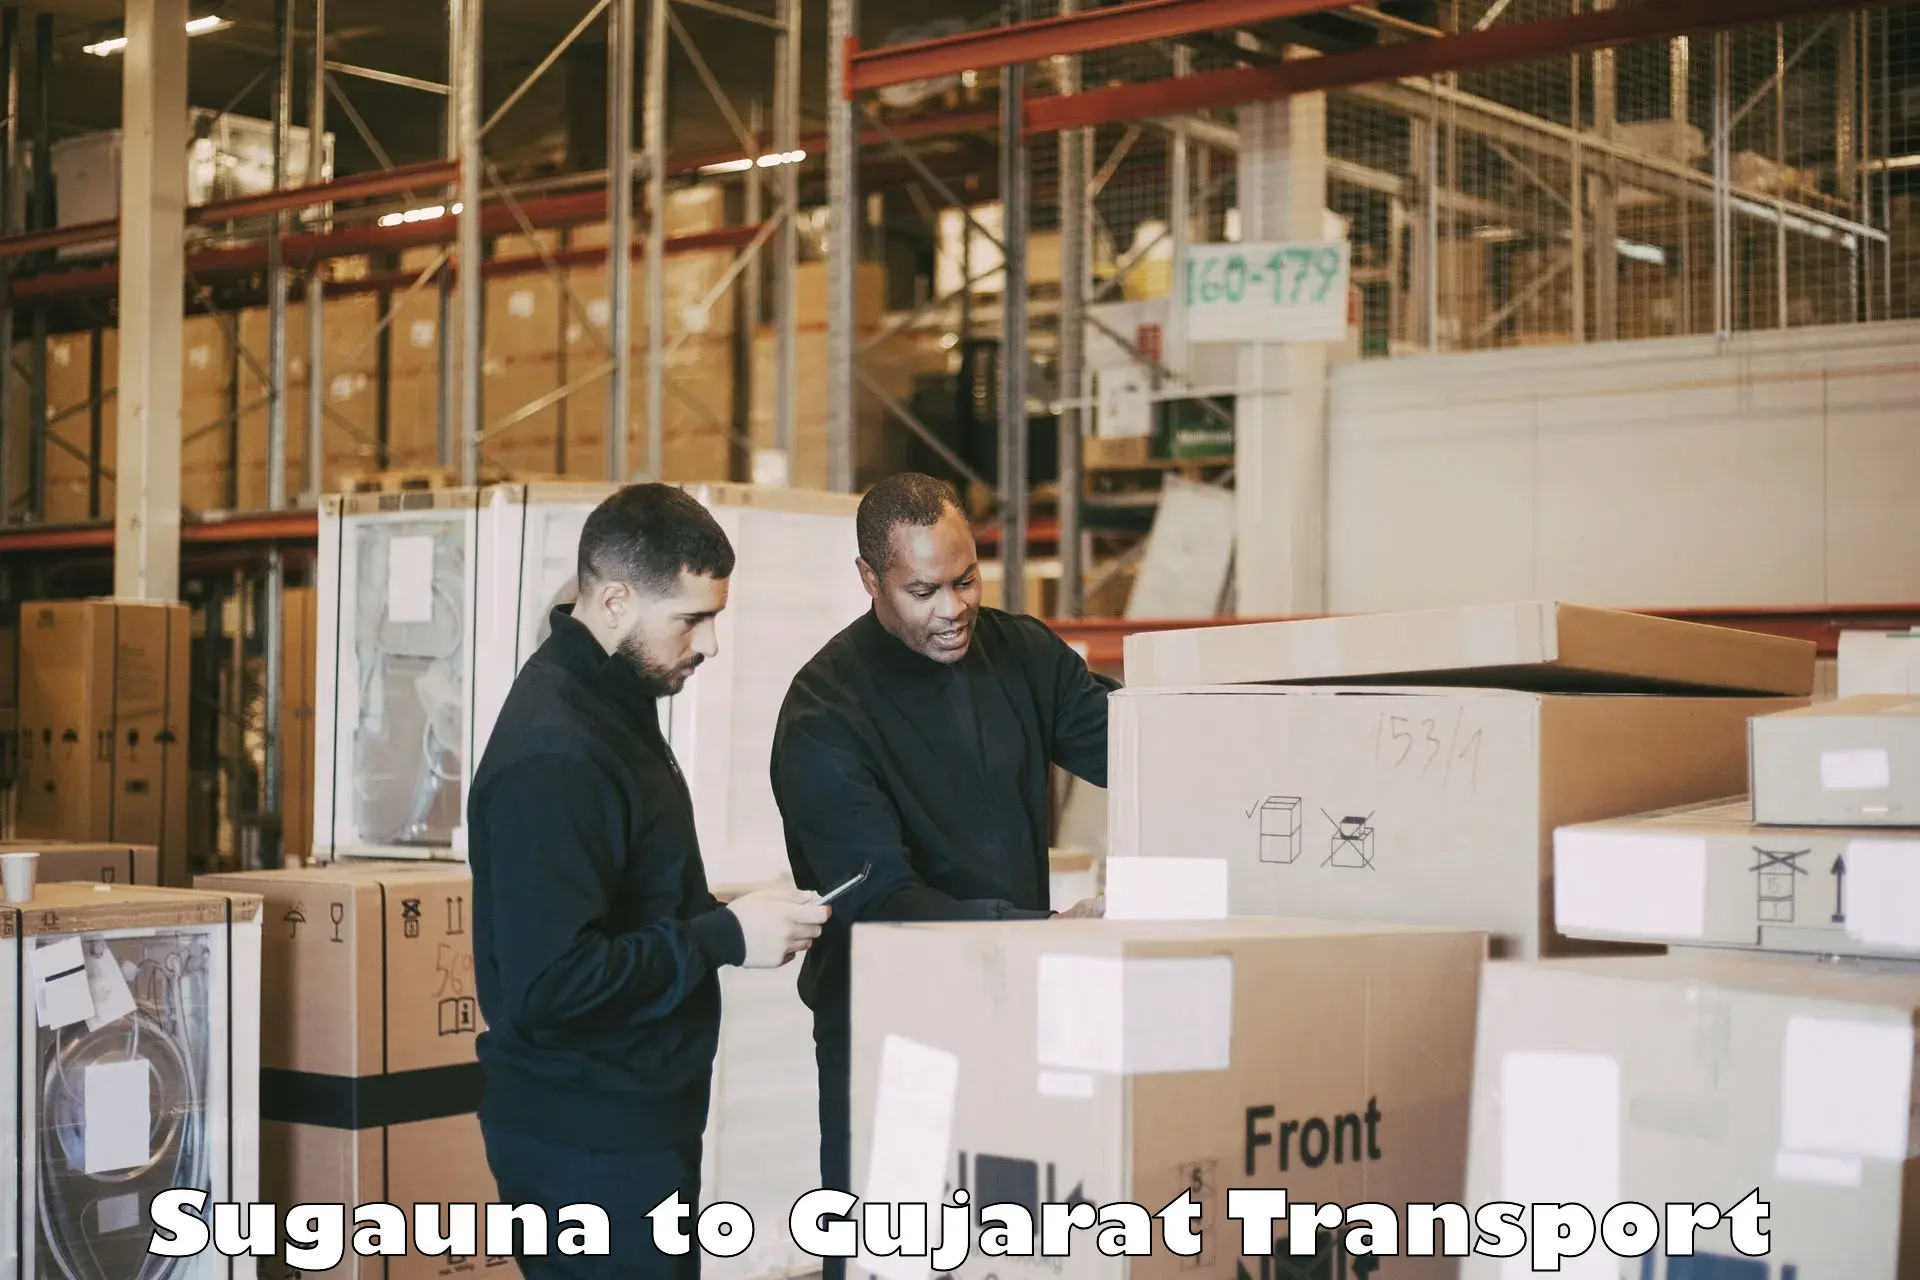 Furniture transport service Sugauna to Hazira